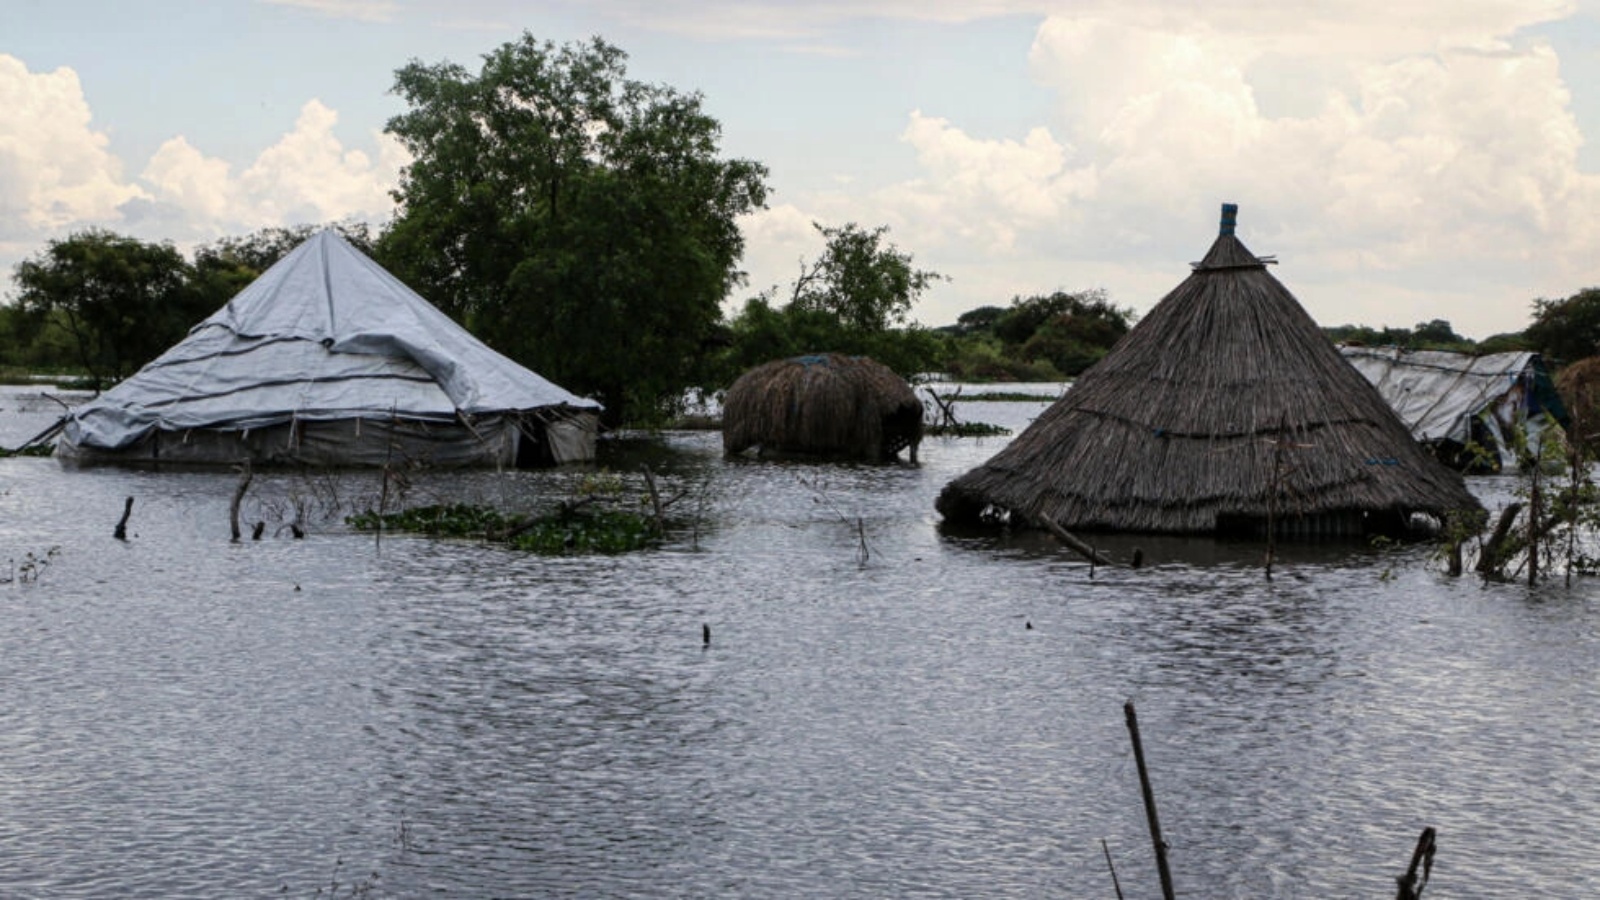 منازل غارقة في منطقة غمرتها الفيضانات معزولة منذ نحو شهر ونصف بسبب الأمطار الغزيرة في بلدة بيبور بولاية بوما شرق جنوب السودان